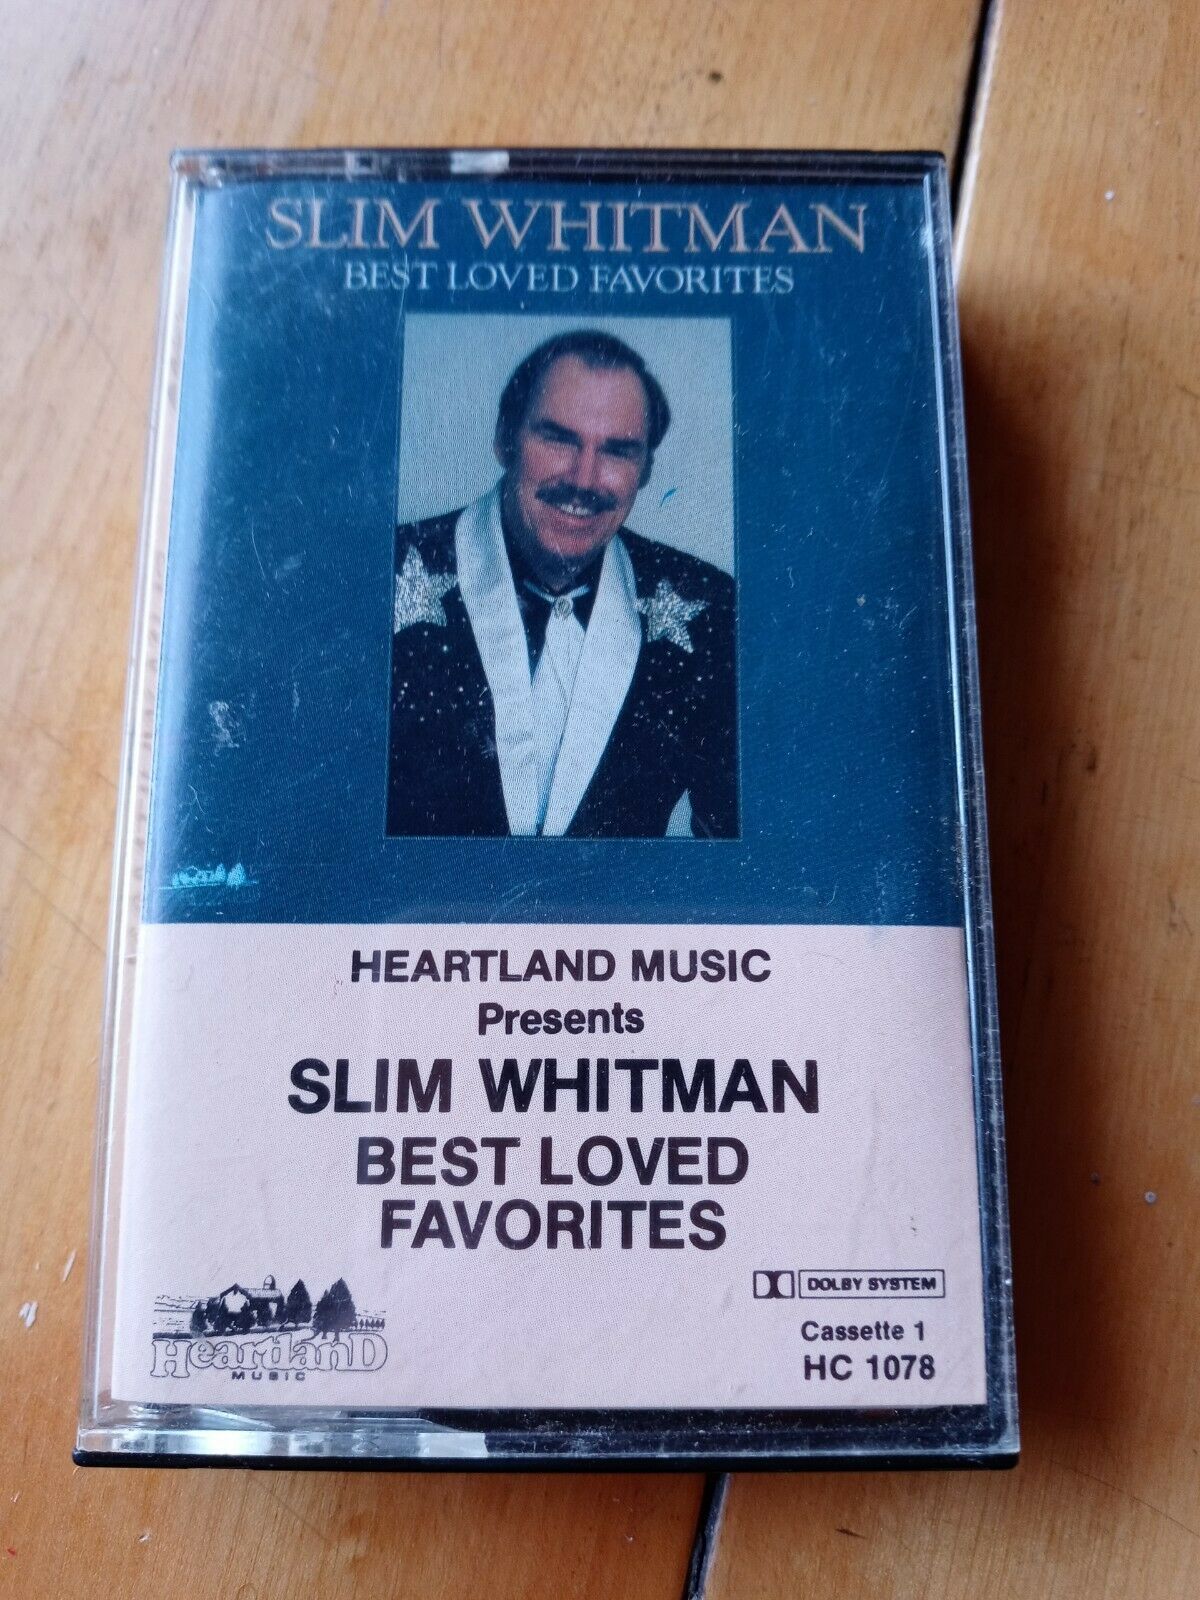 Primary image for Cassette Tape Slim Whitman Best Loved Favorites Tape 1 Heartland Music 11 Songs